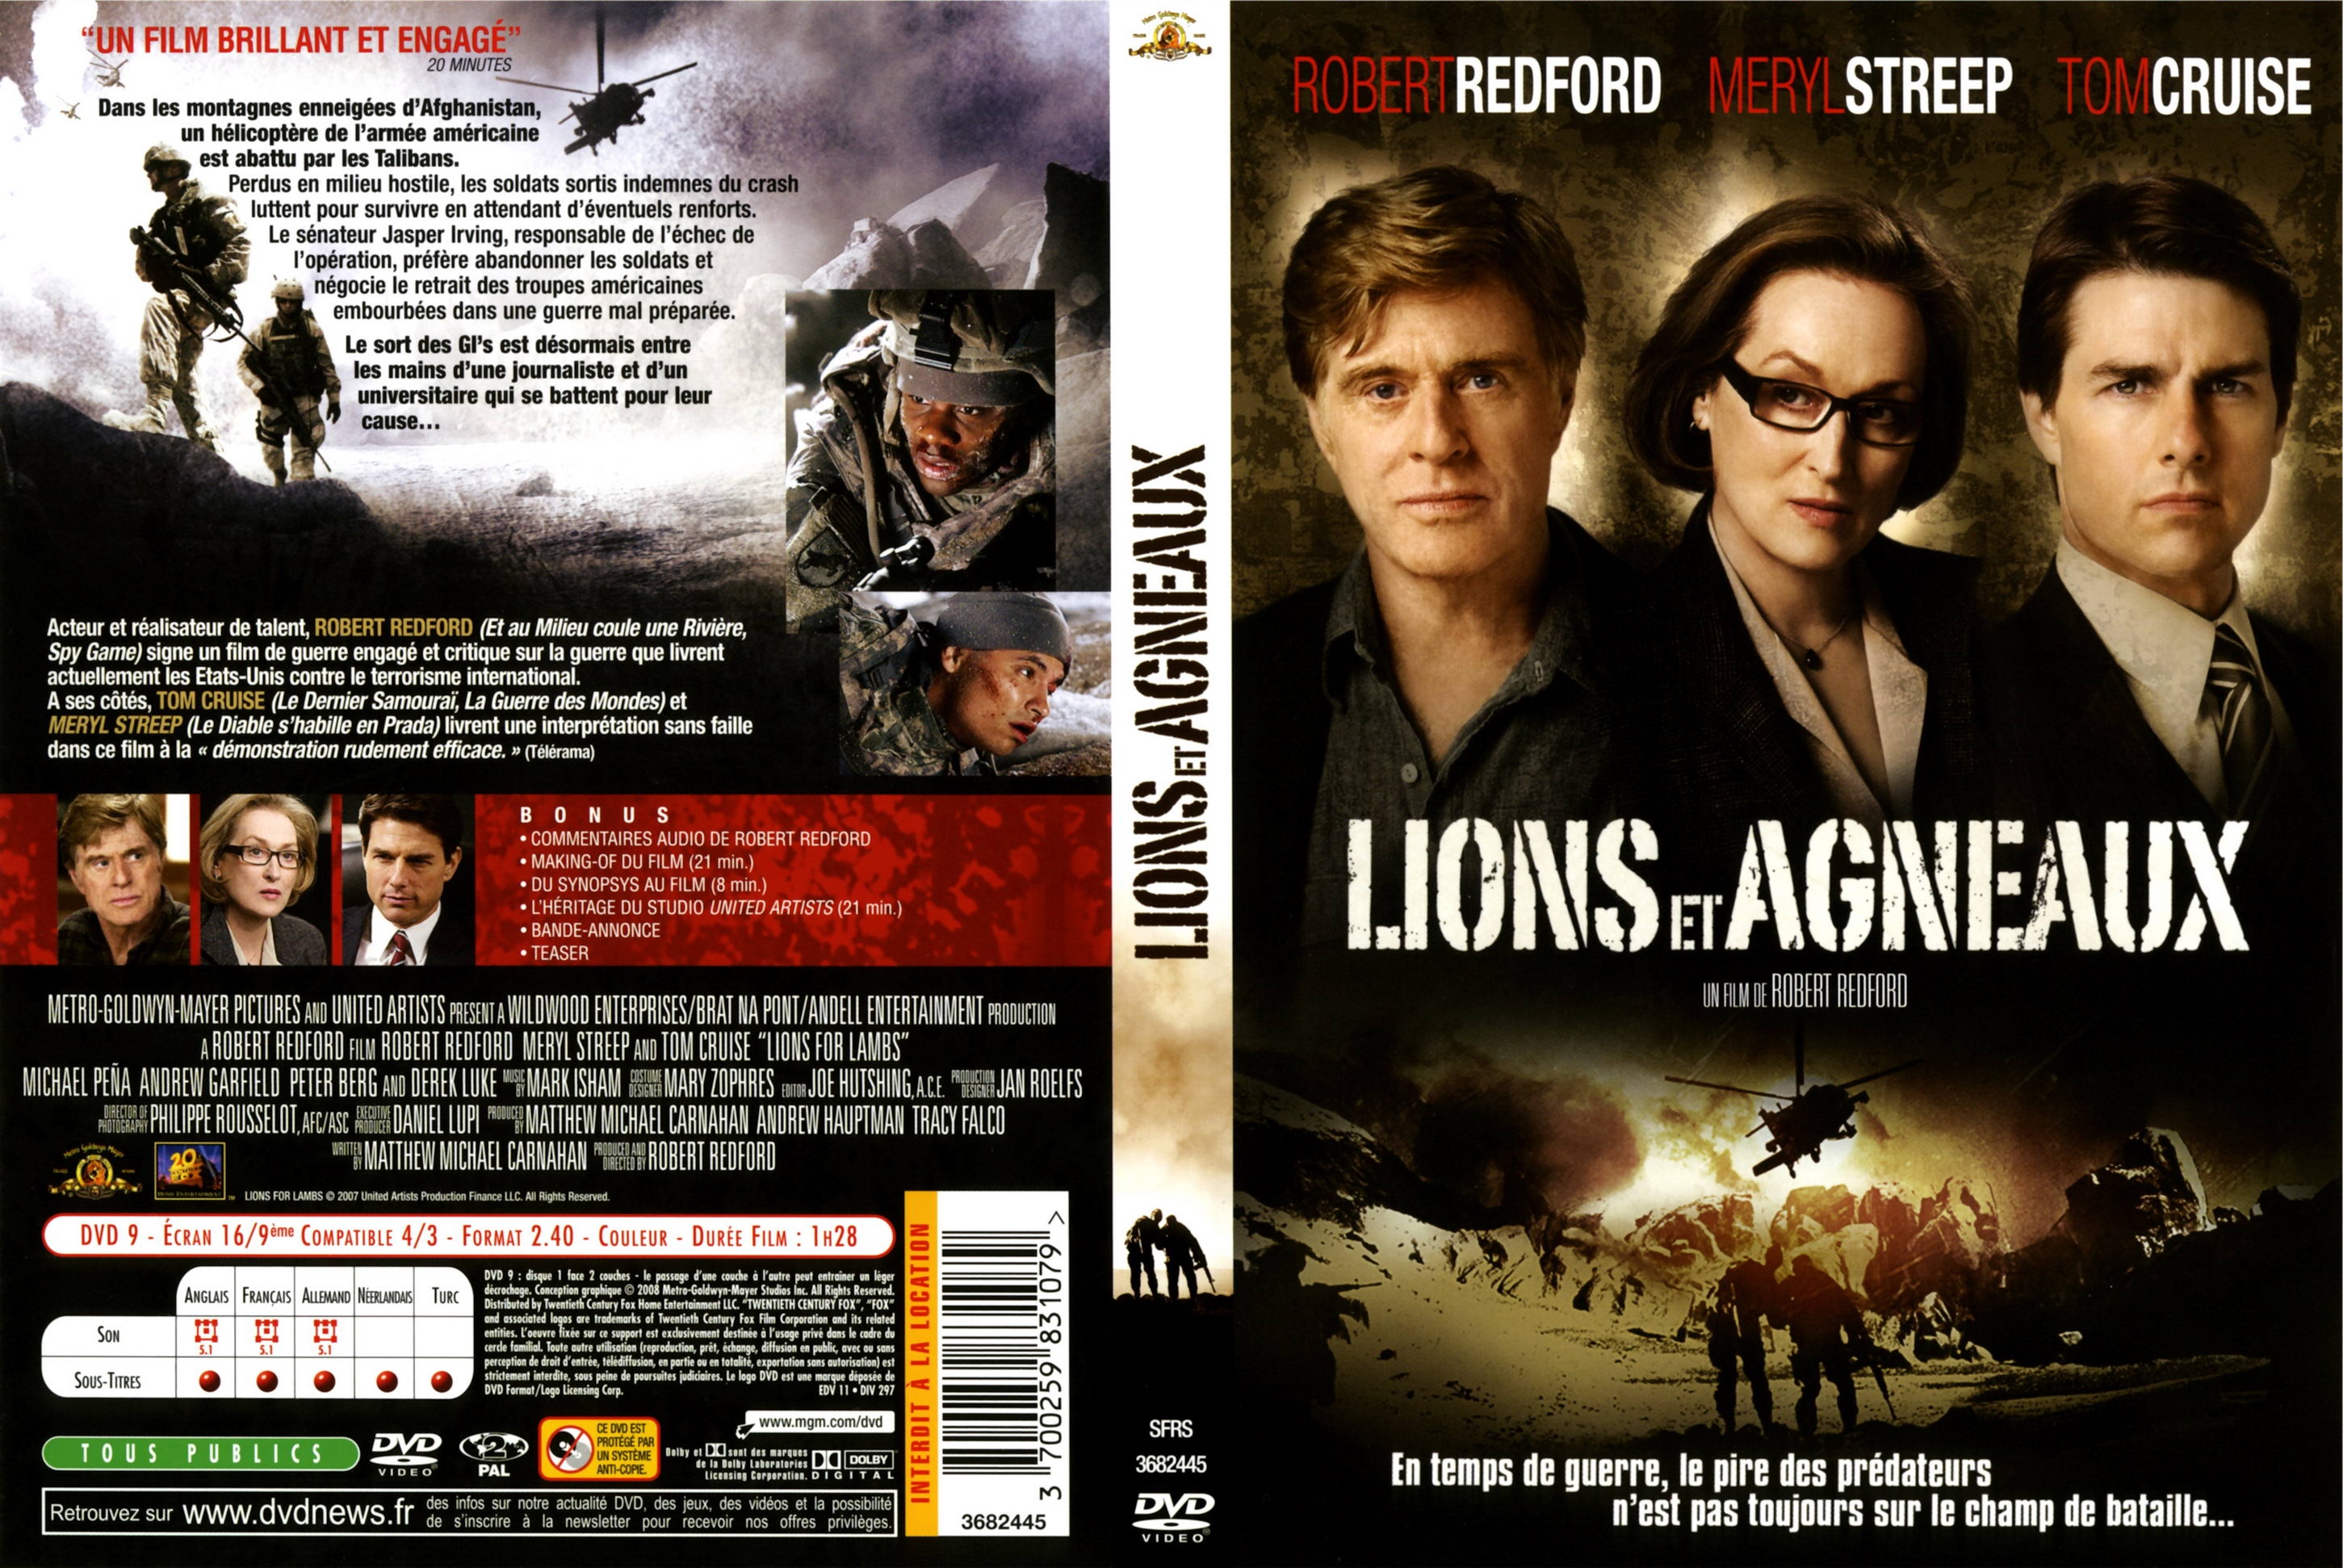 Jaquette DVD Lions et agneaux v2